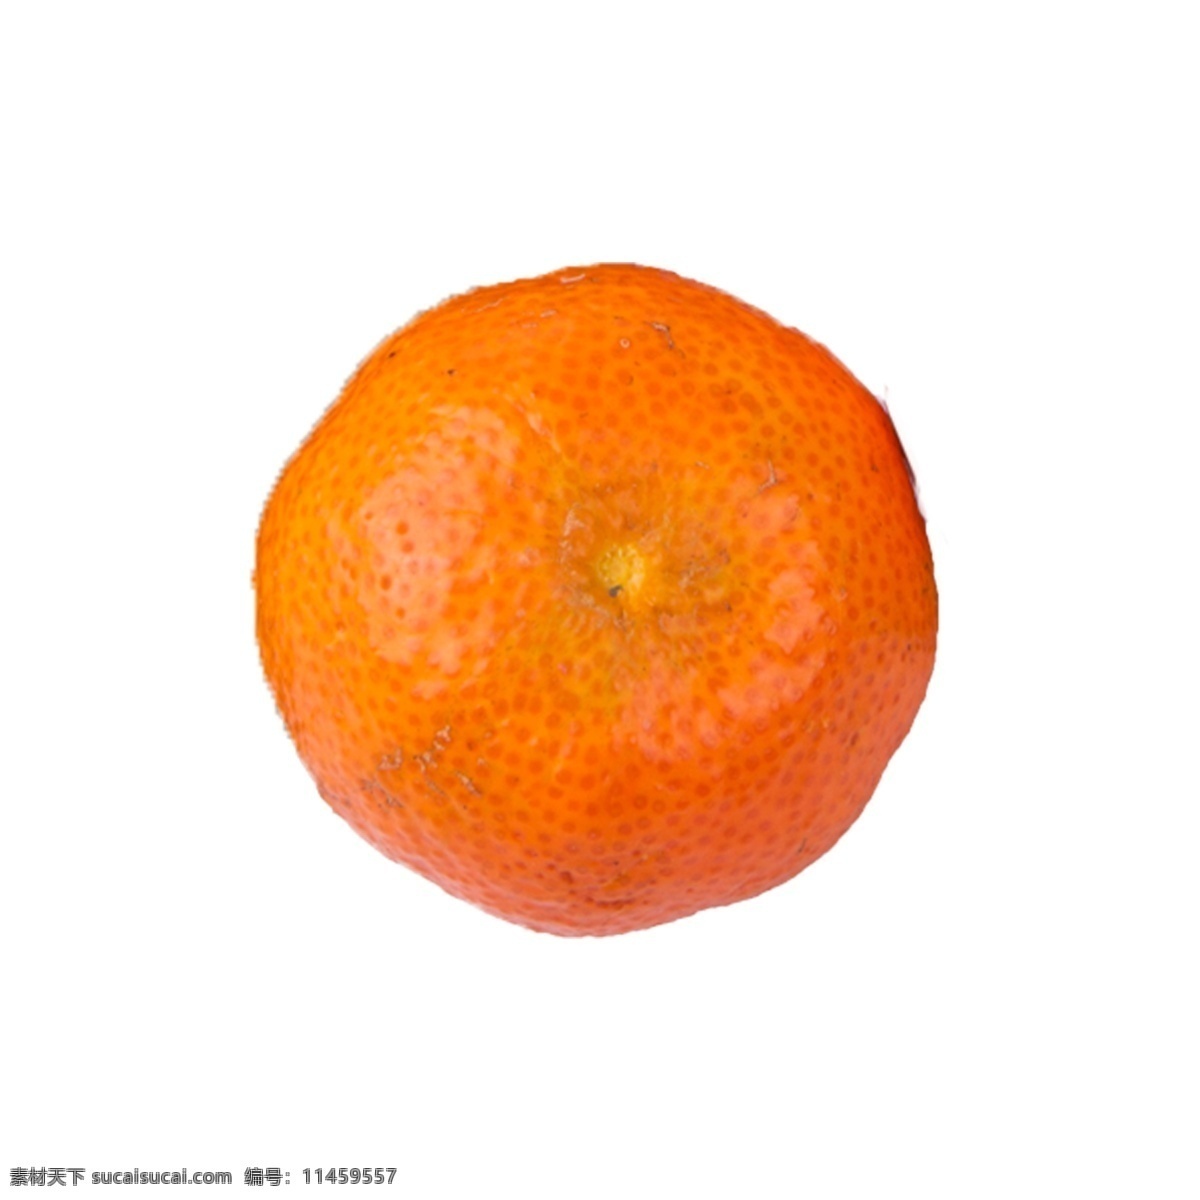 砂糖 橘 免 抠 砂糖橘 一个砂糖橘 好吃的橘子 一个橘子免抠 新鲜的橘子 好吃的水果 水果